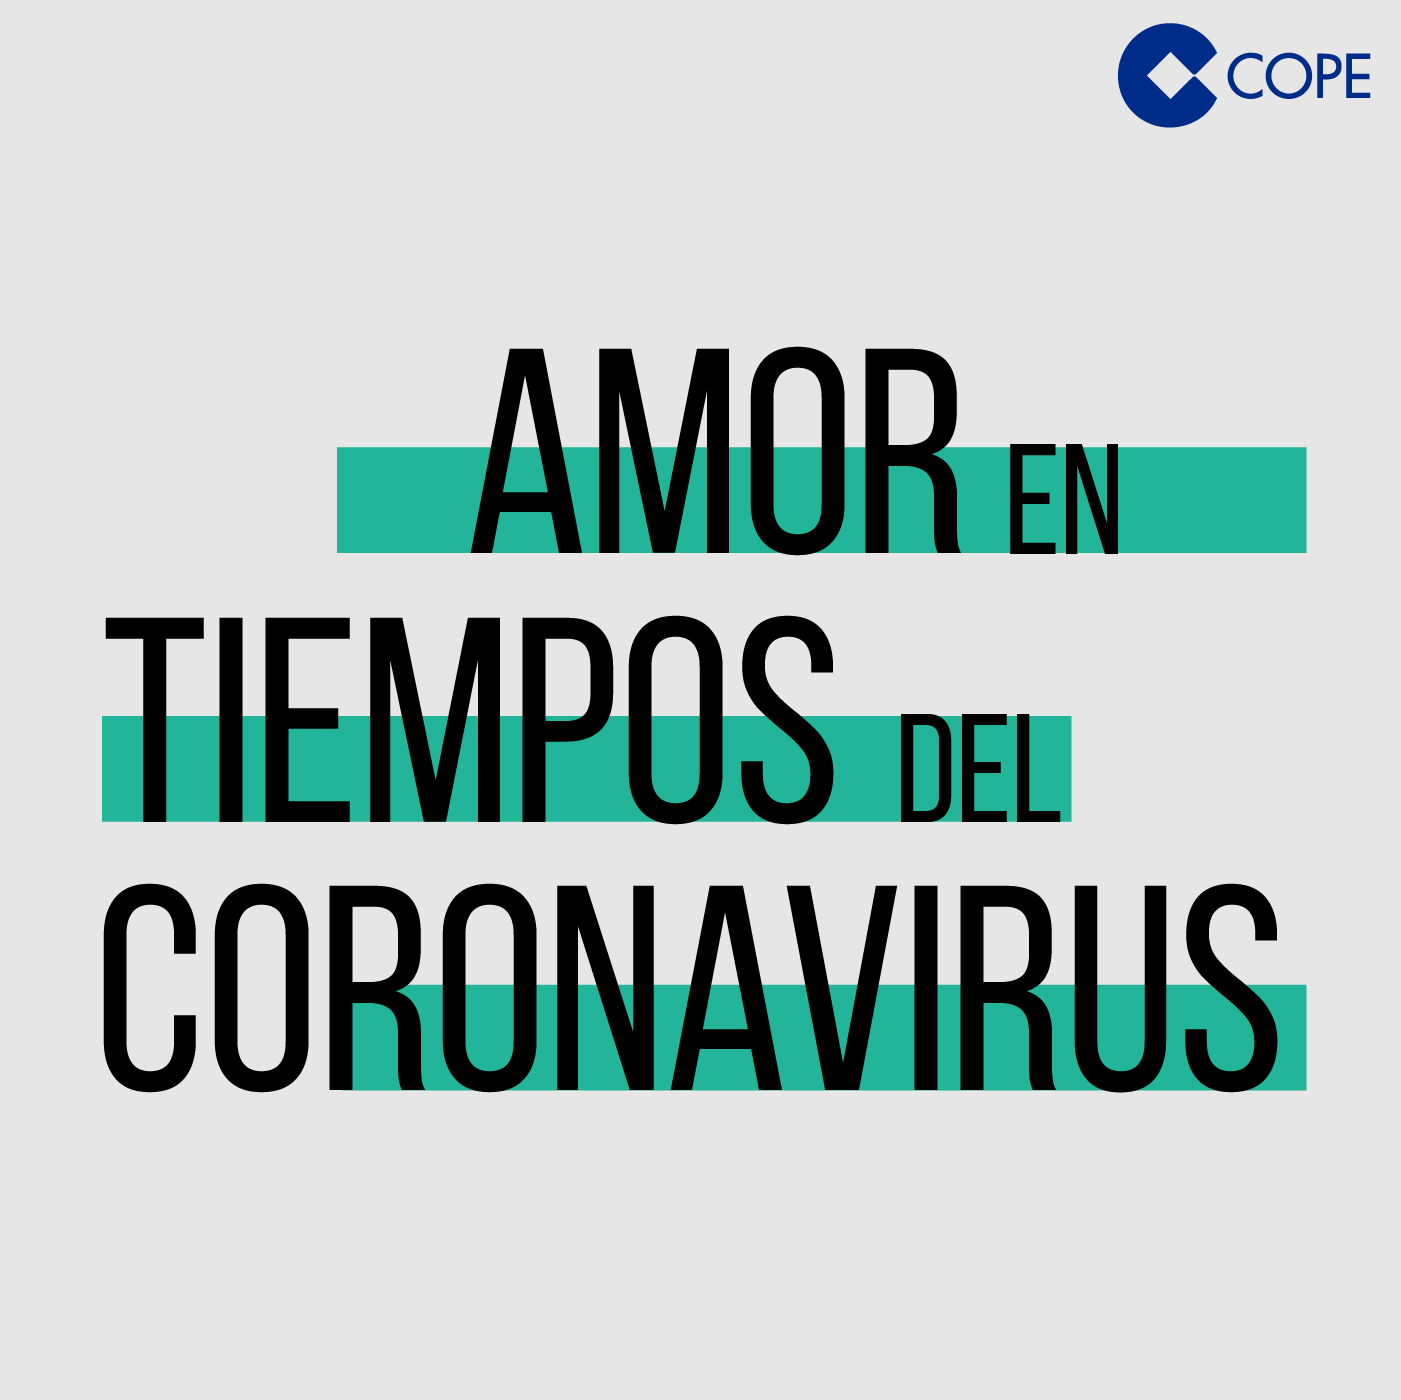 El coronavirus y el amor